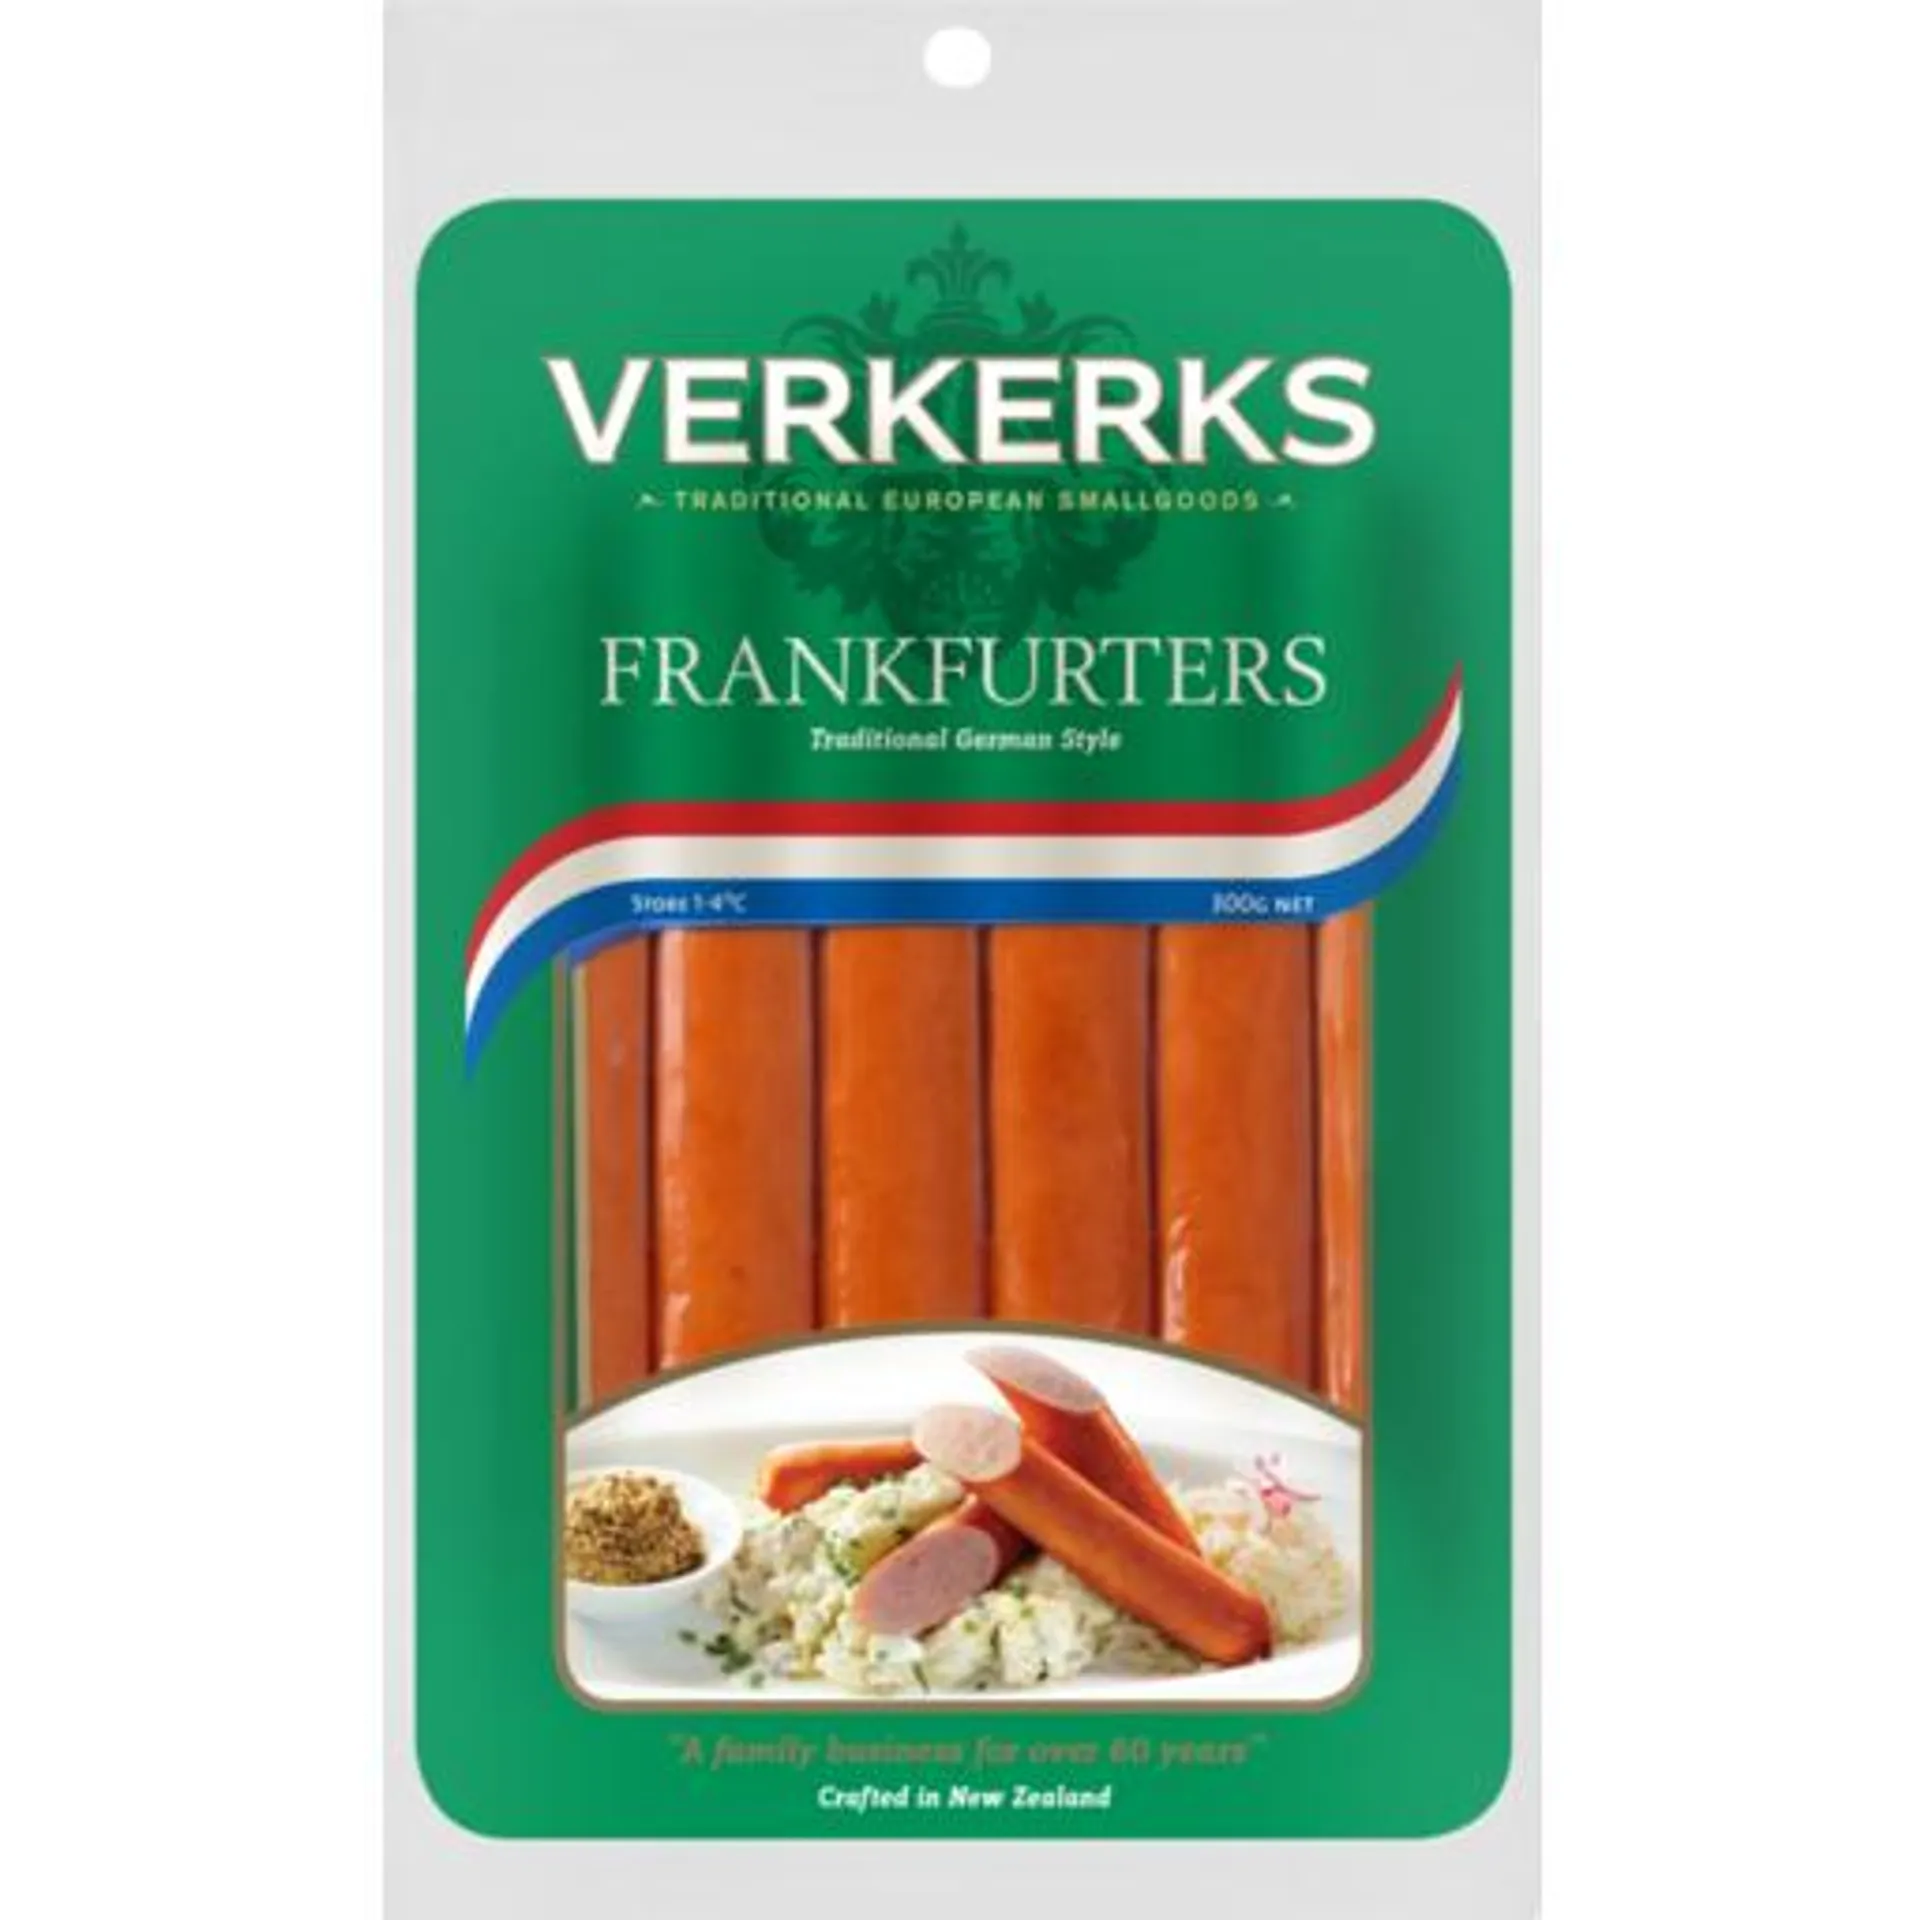 Verkerks Frankfurters 300g